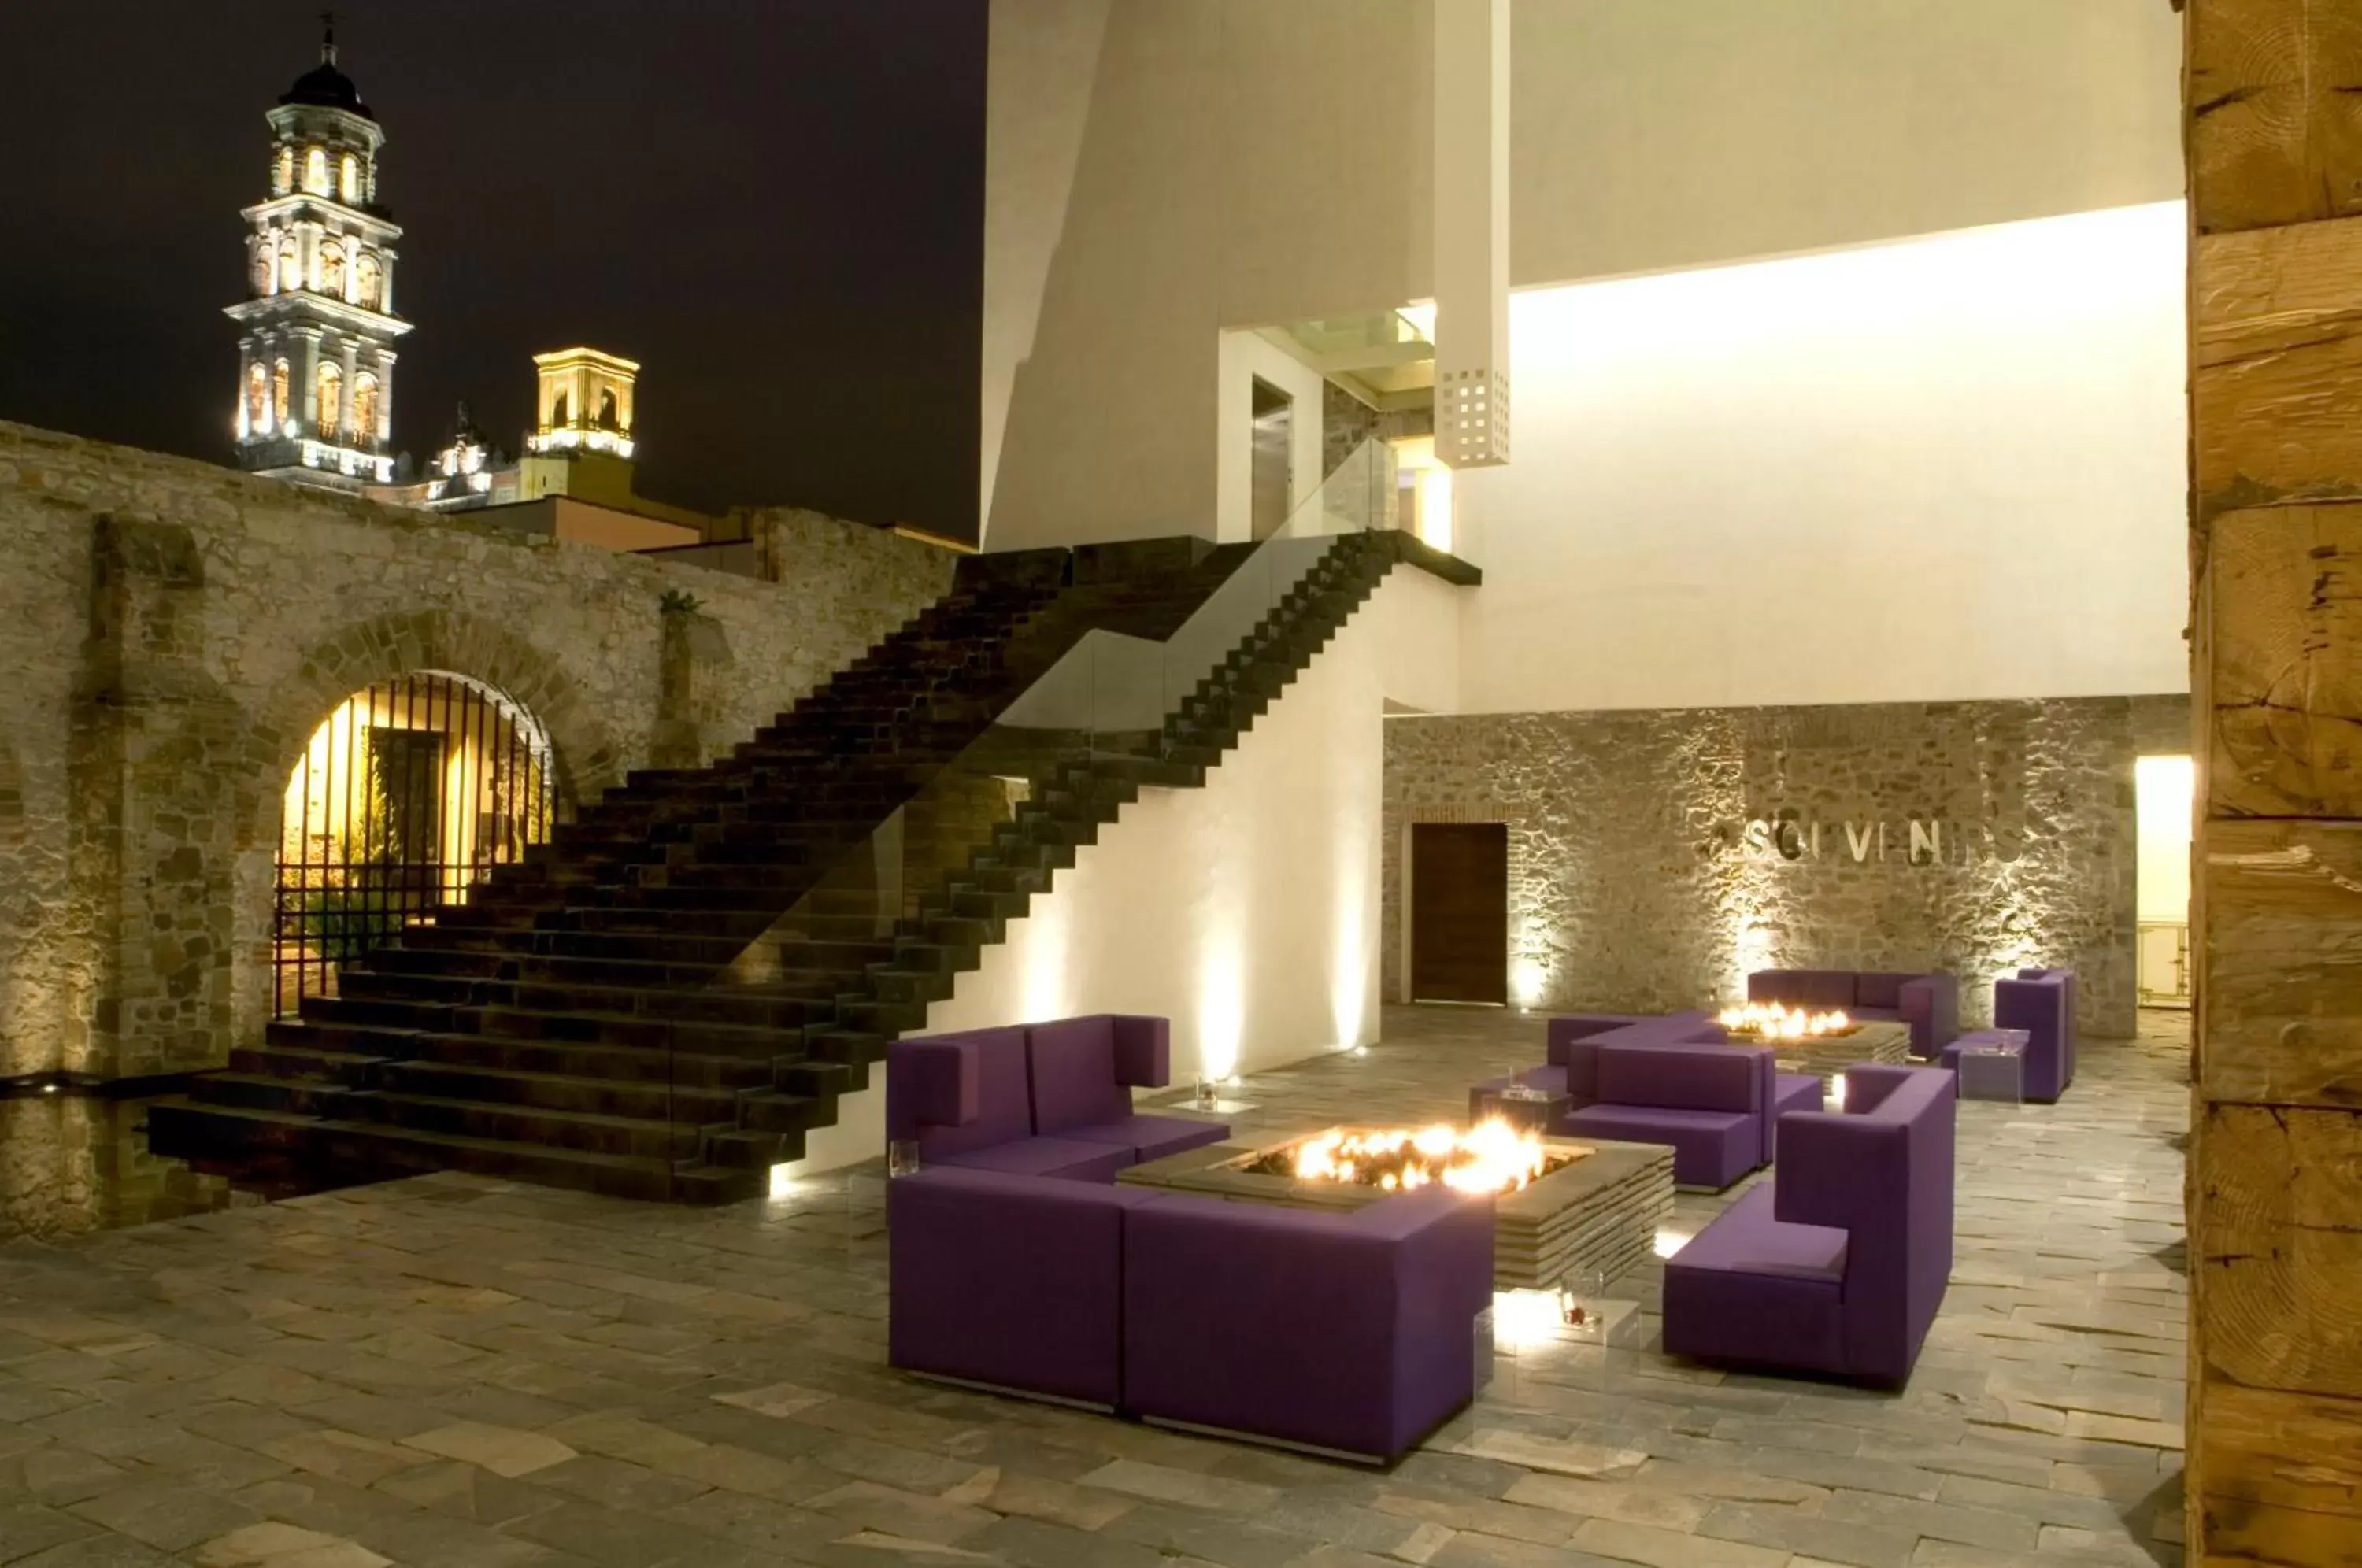 Lobby or reception in La Purificadora, Puebla, a Member of Design Hotels